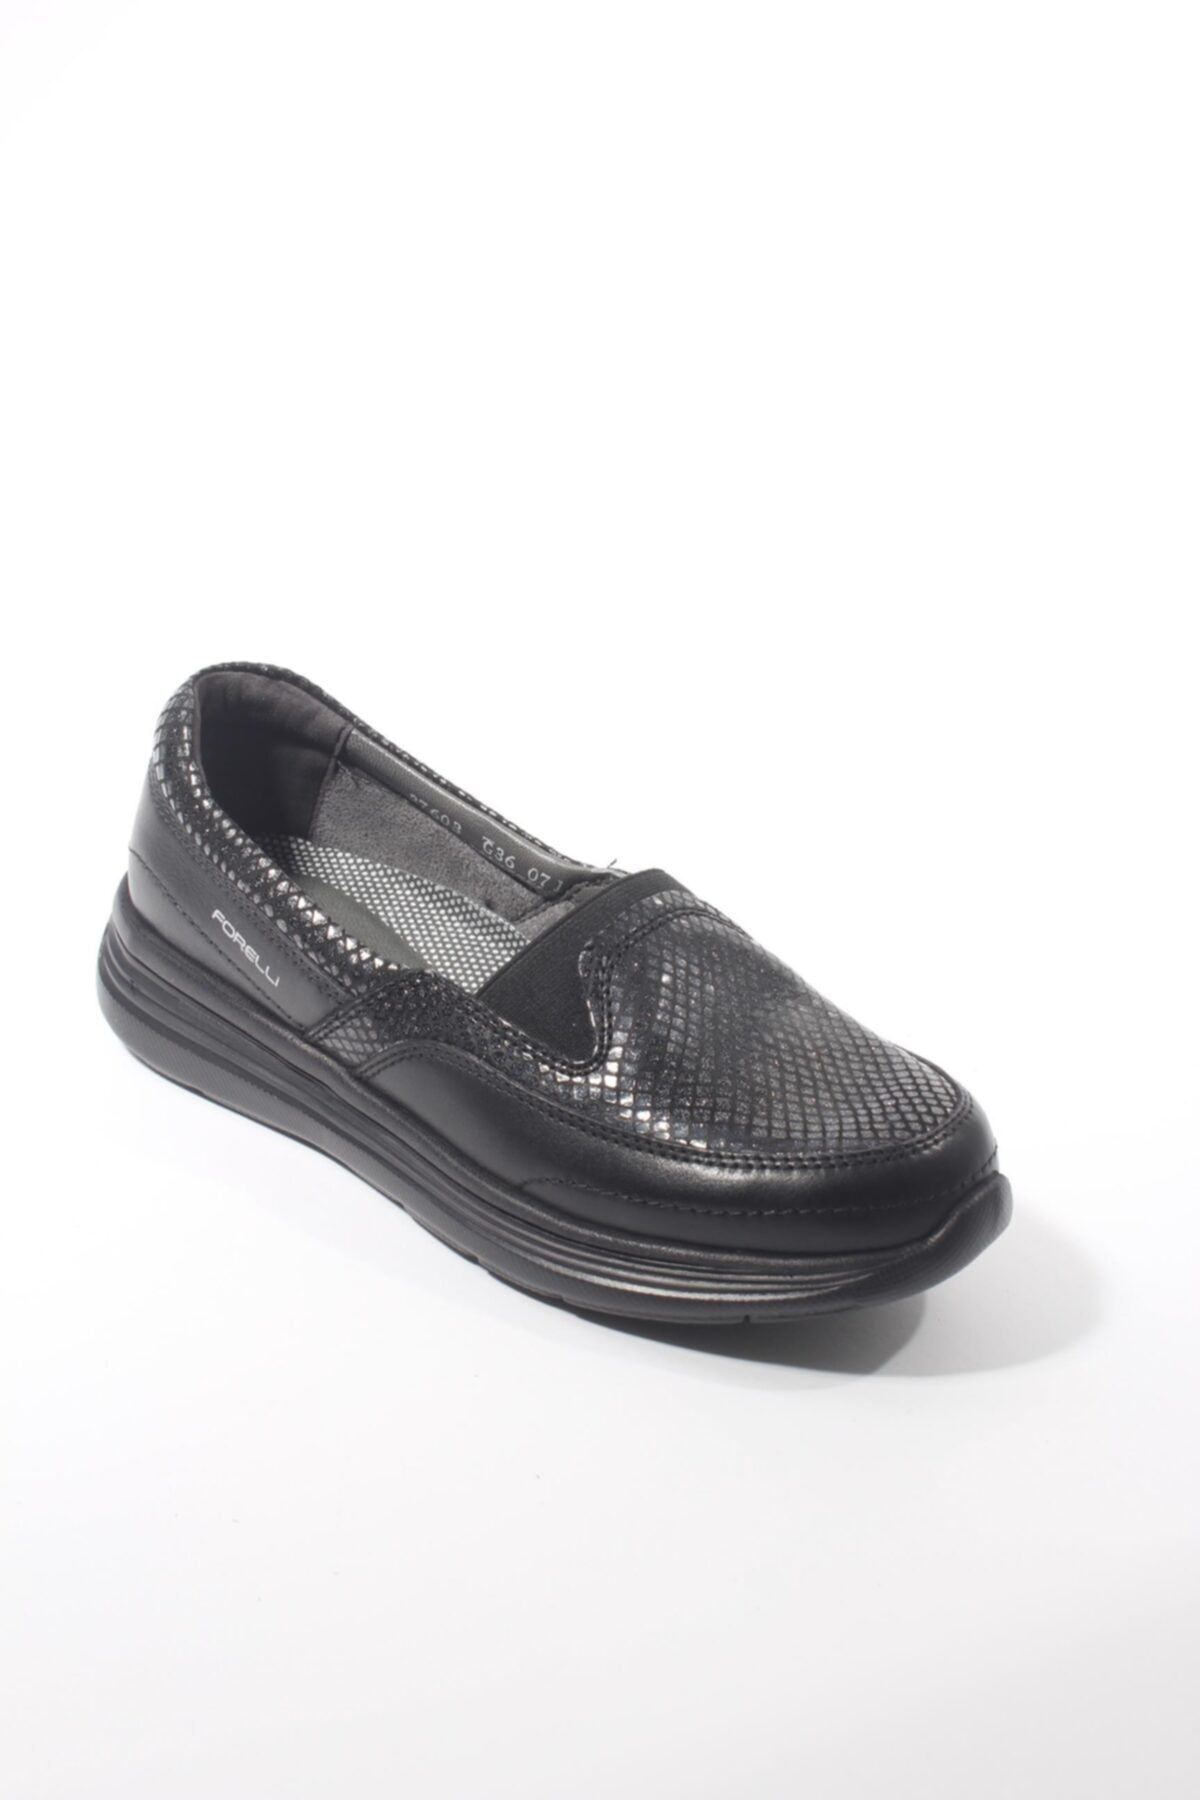 Forelli 27603-g Comfort Kadın Ayakkabı Siyah